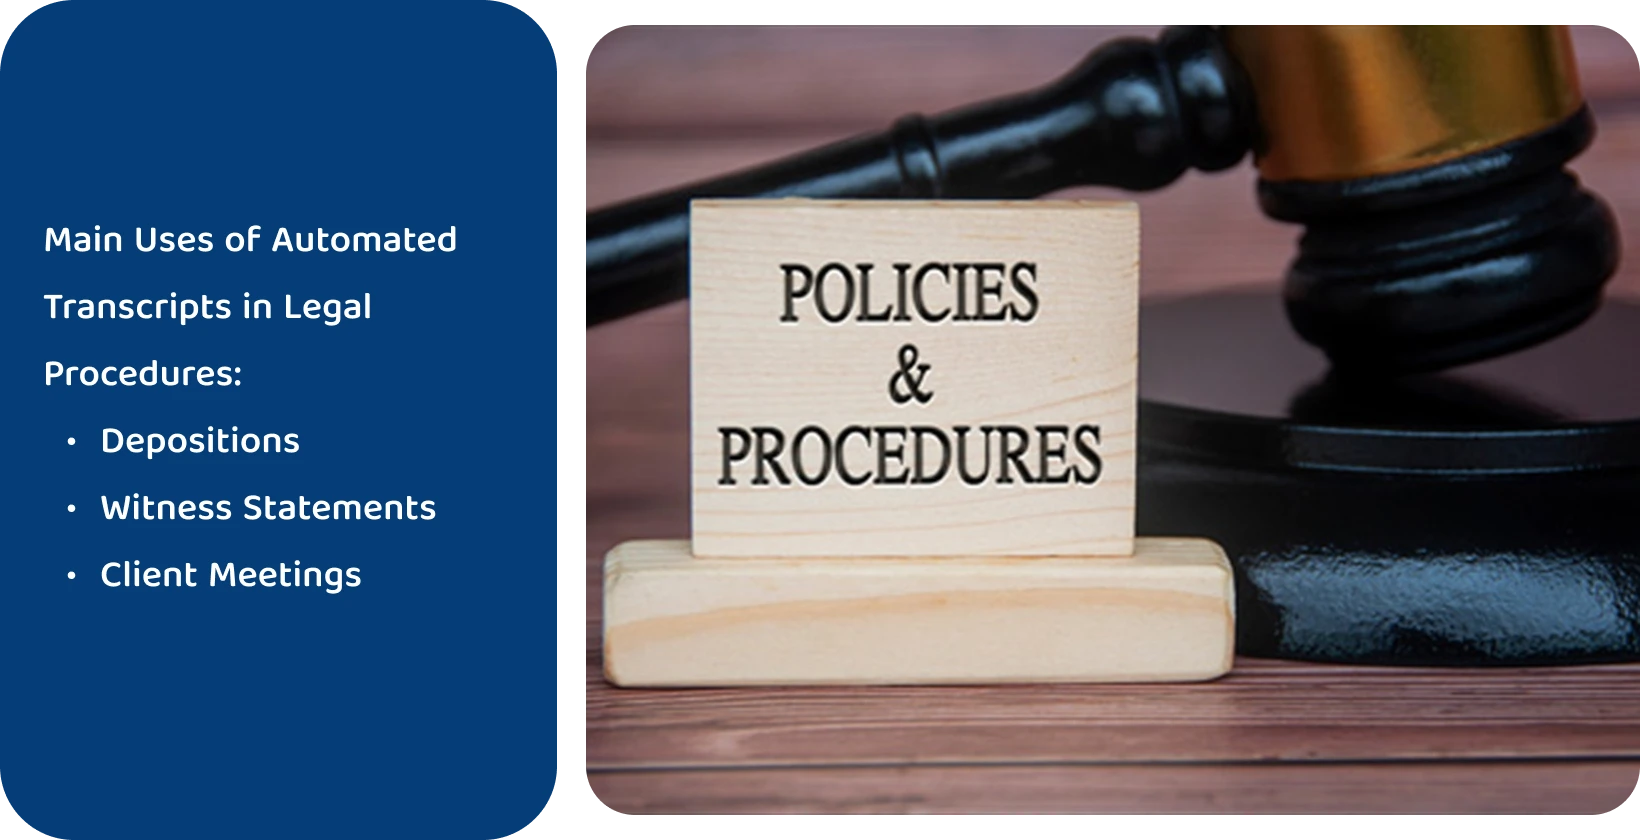 Kladivko vedľa značky "Politiky a postupy", ktorá predstavuje právne normy, ktoré spĺňajú automatizované nástroje na prepis.